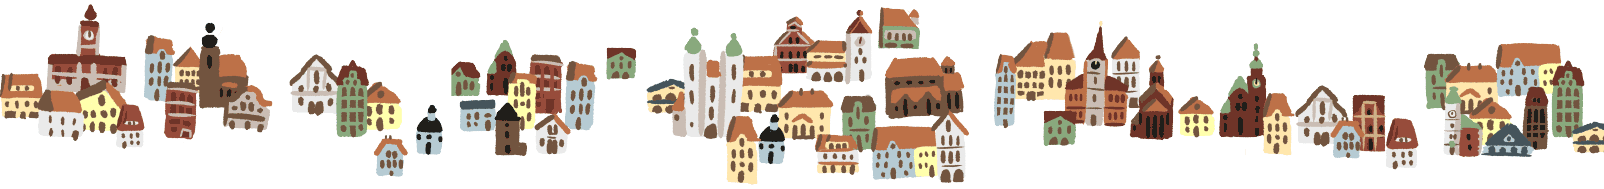 prosto narysowane budynki miast z mapy do gry edukacyjnej dla dzieci